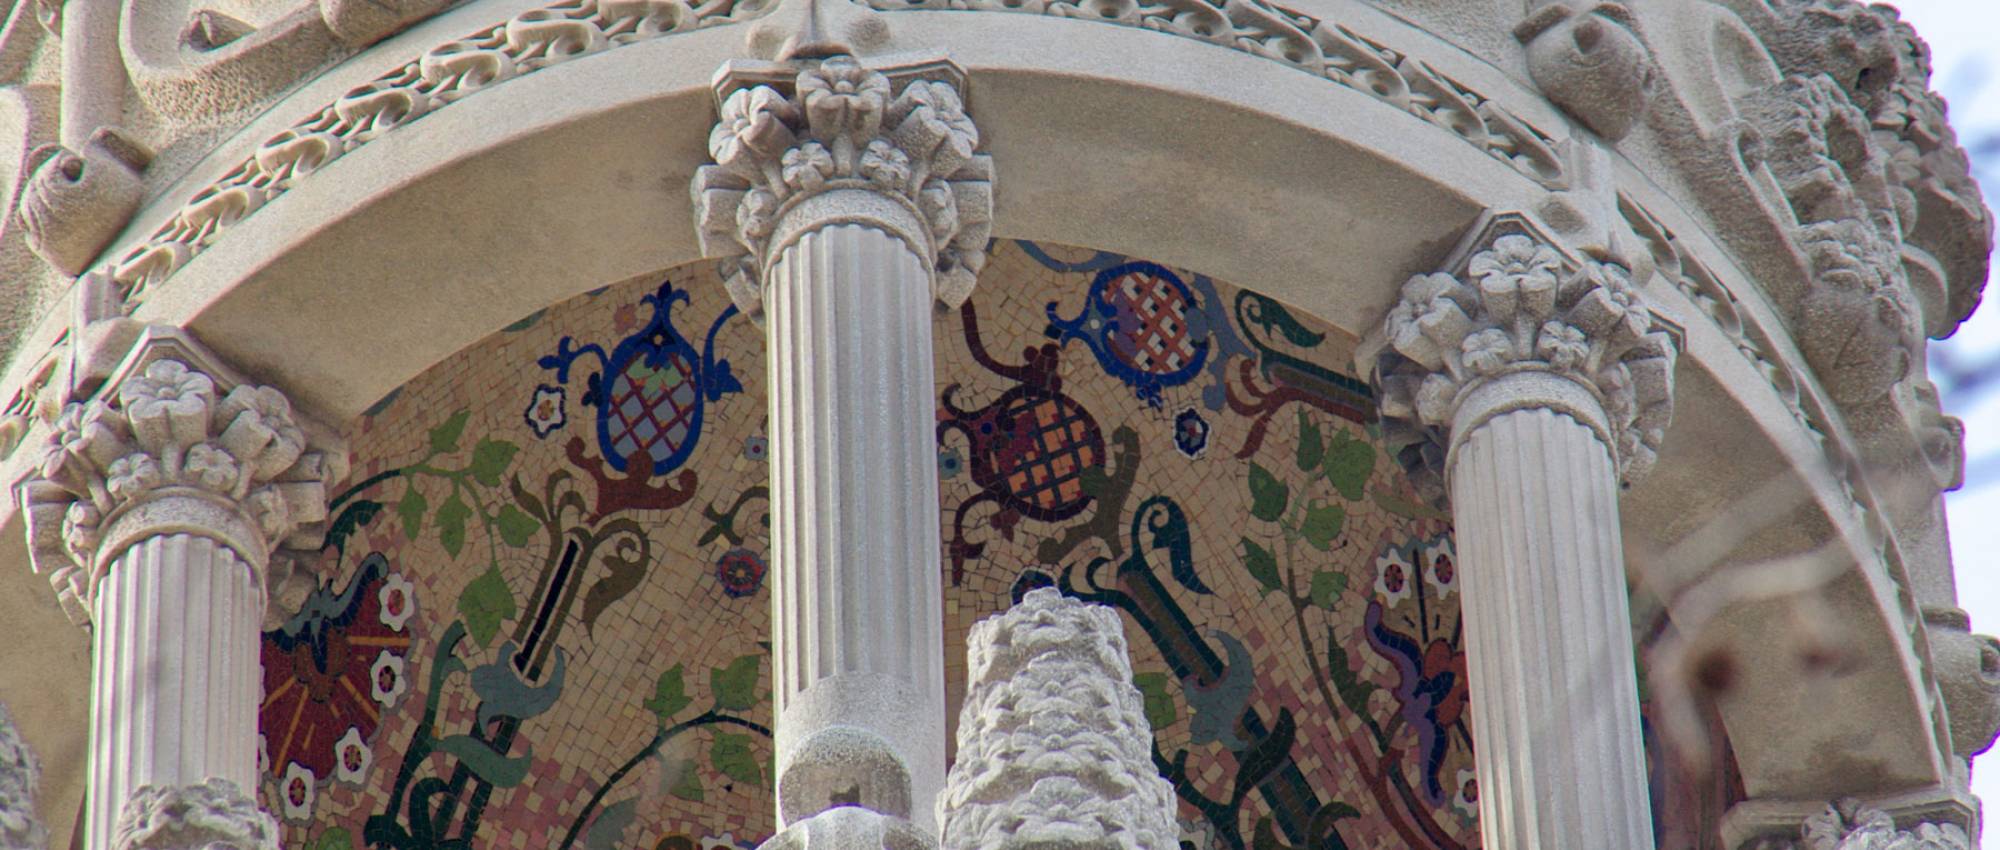 Mosaic del sostre de la torre de la Terrassa. Amadalvarez / Wikimedia Commons. CC BY-SA 3.0